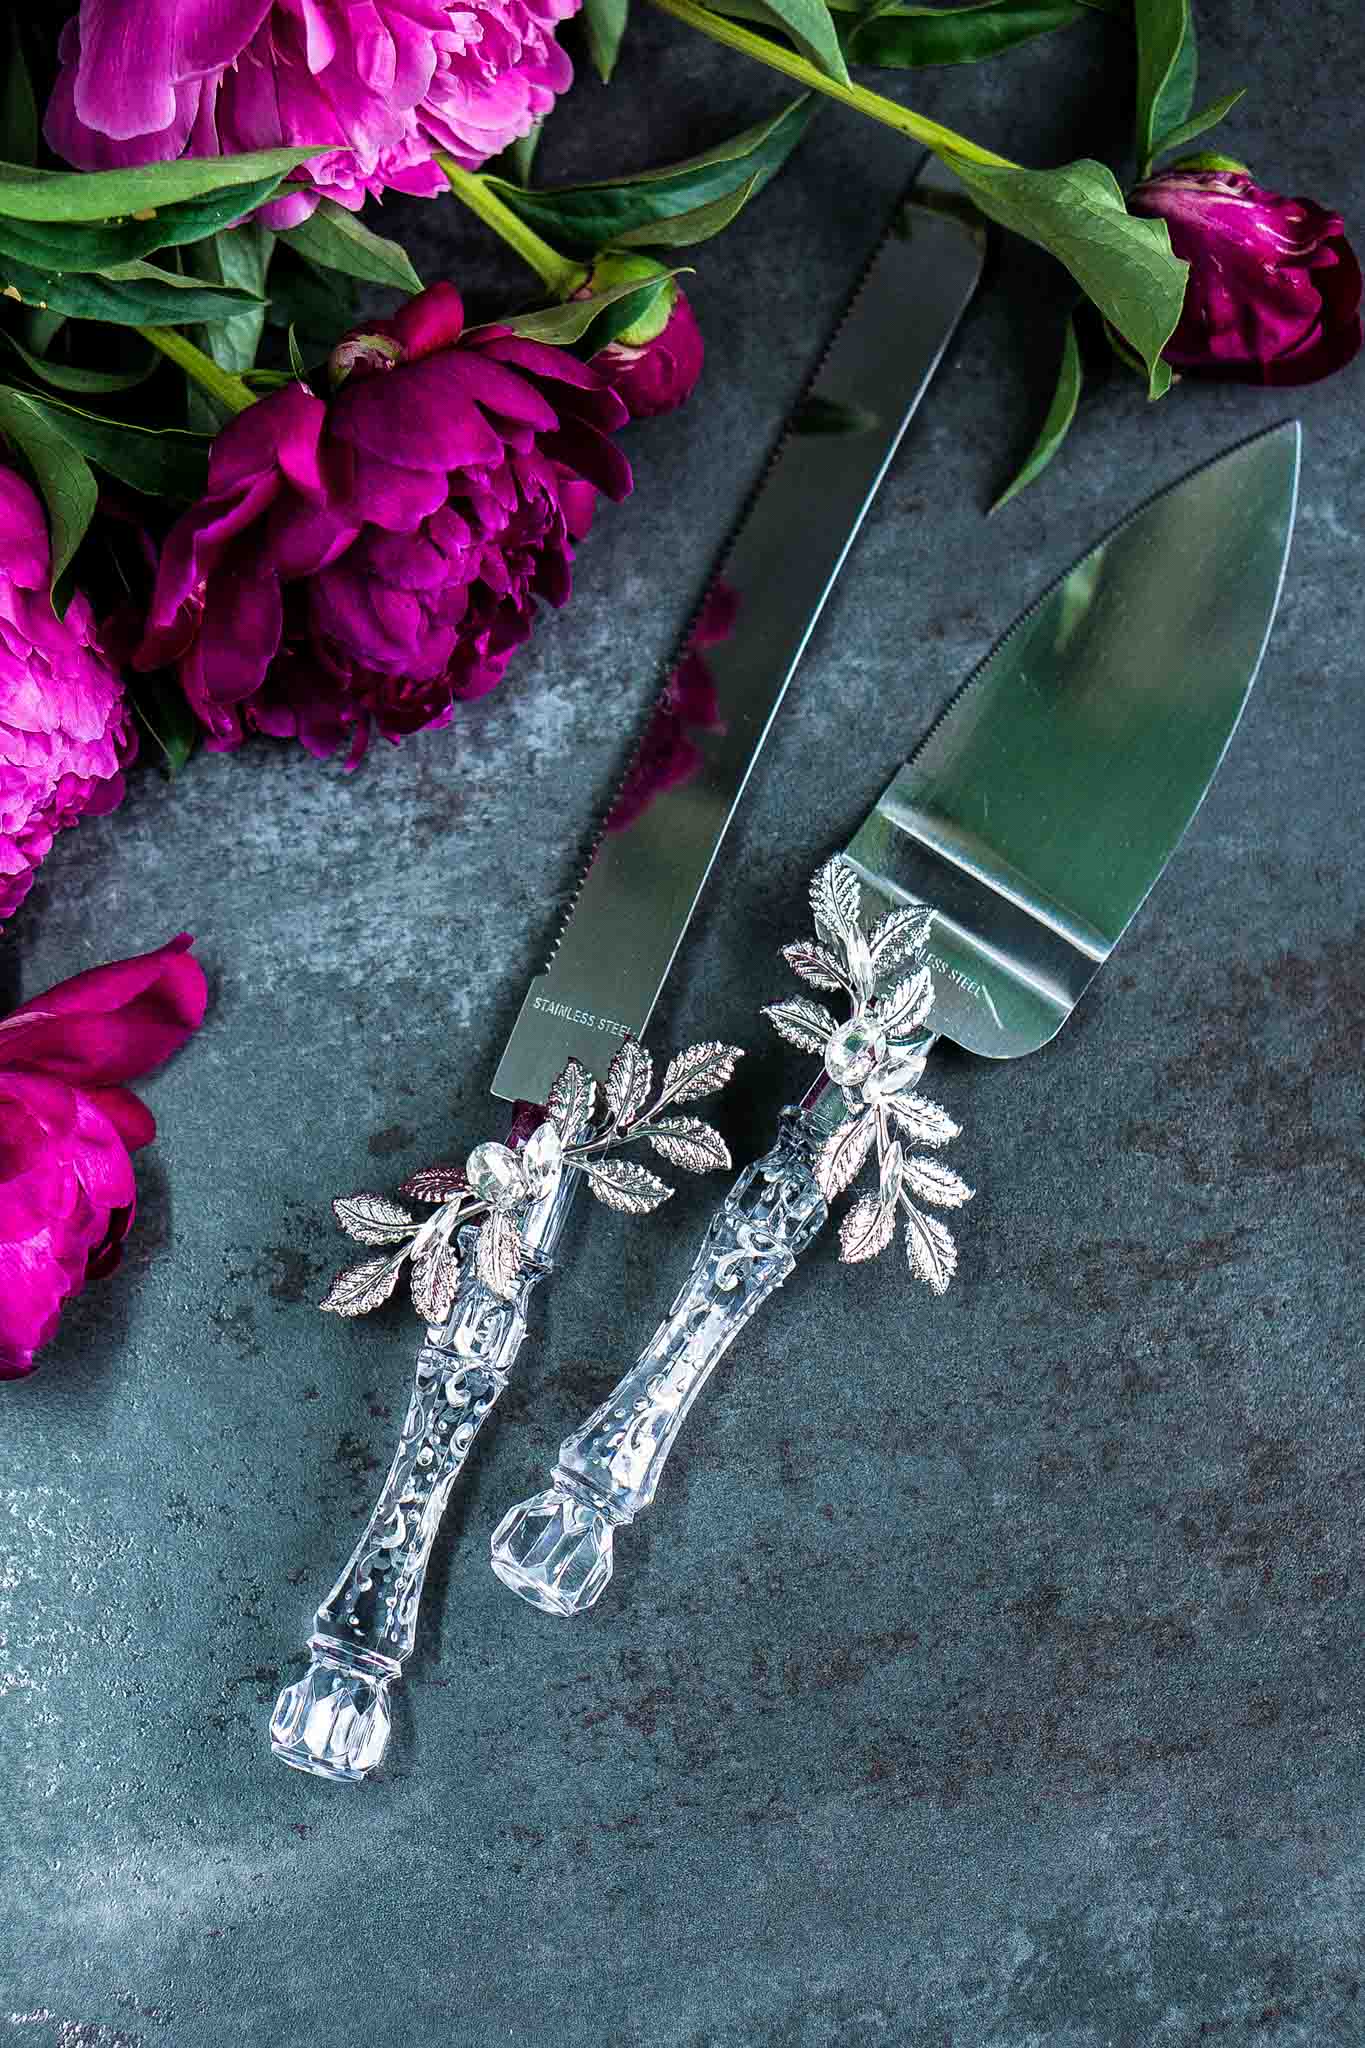 Silver-themed wedding cake utensils